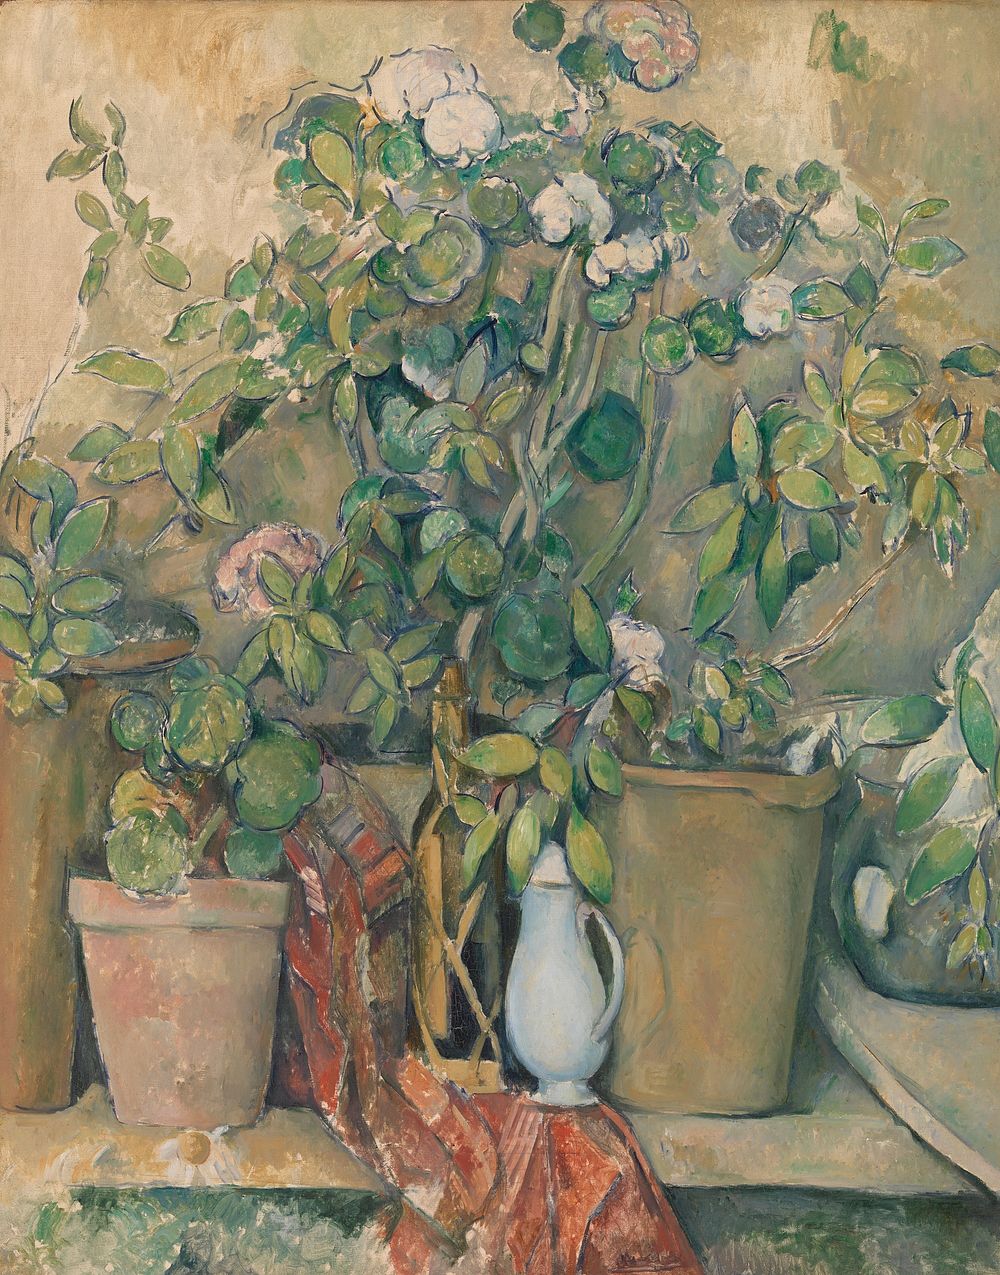 Terracotta Pots and Flowers (Pots en terre cuite et fleurs) by Paul Cézanne